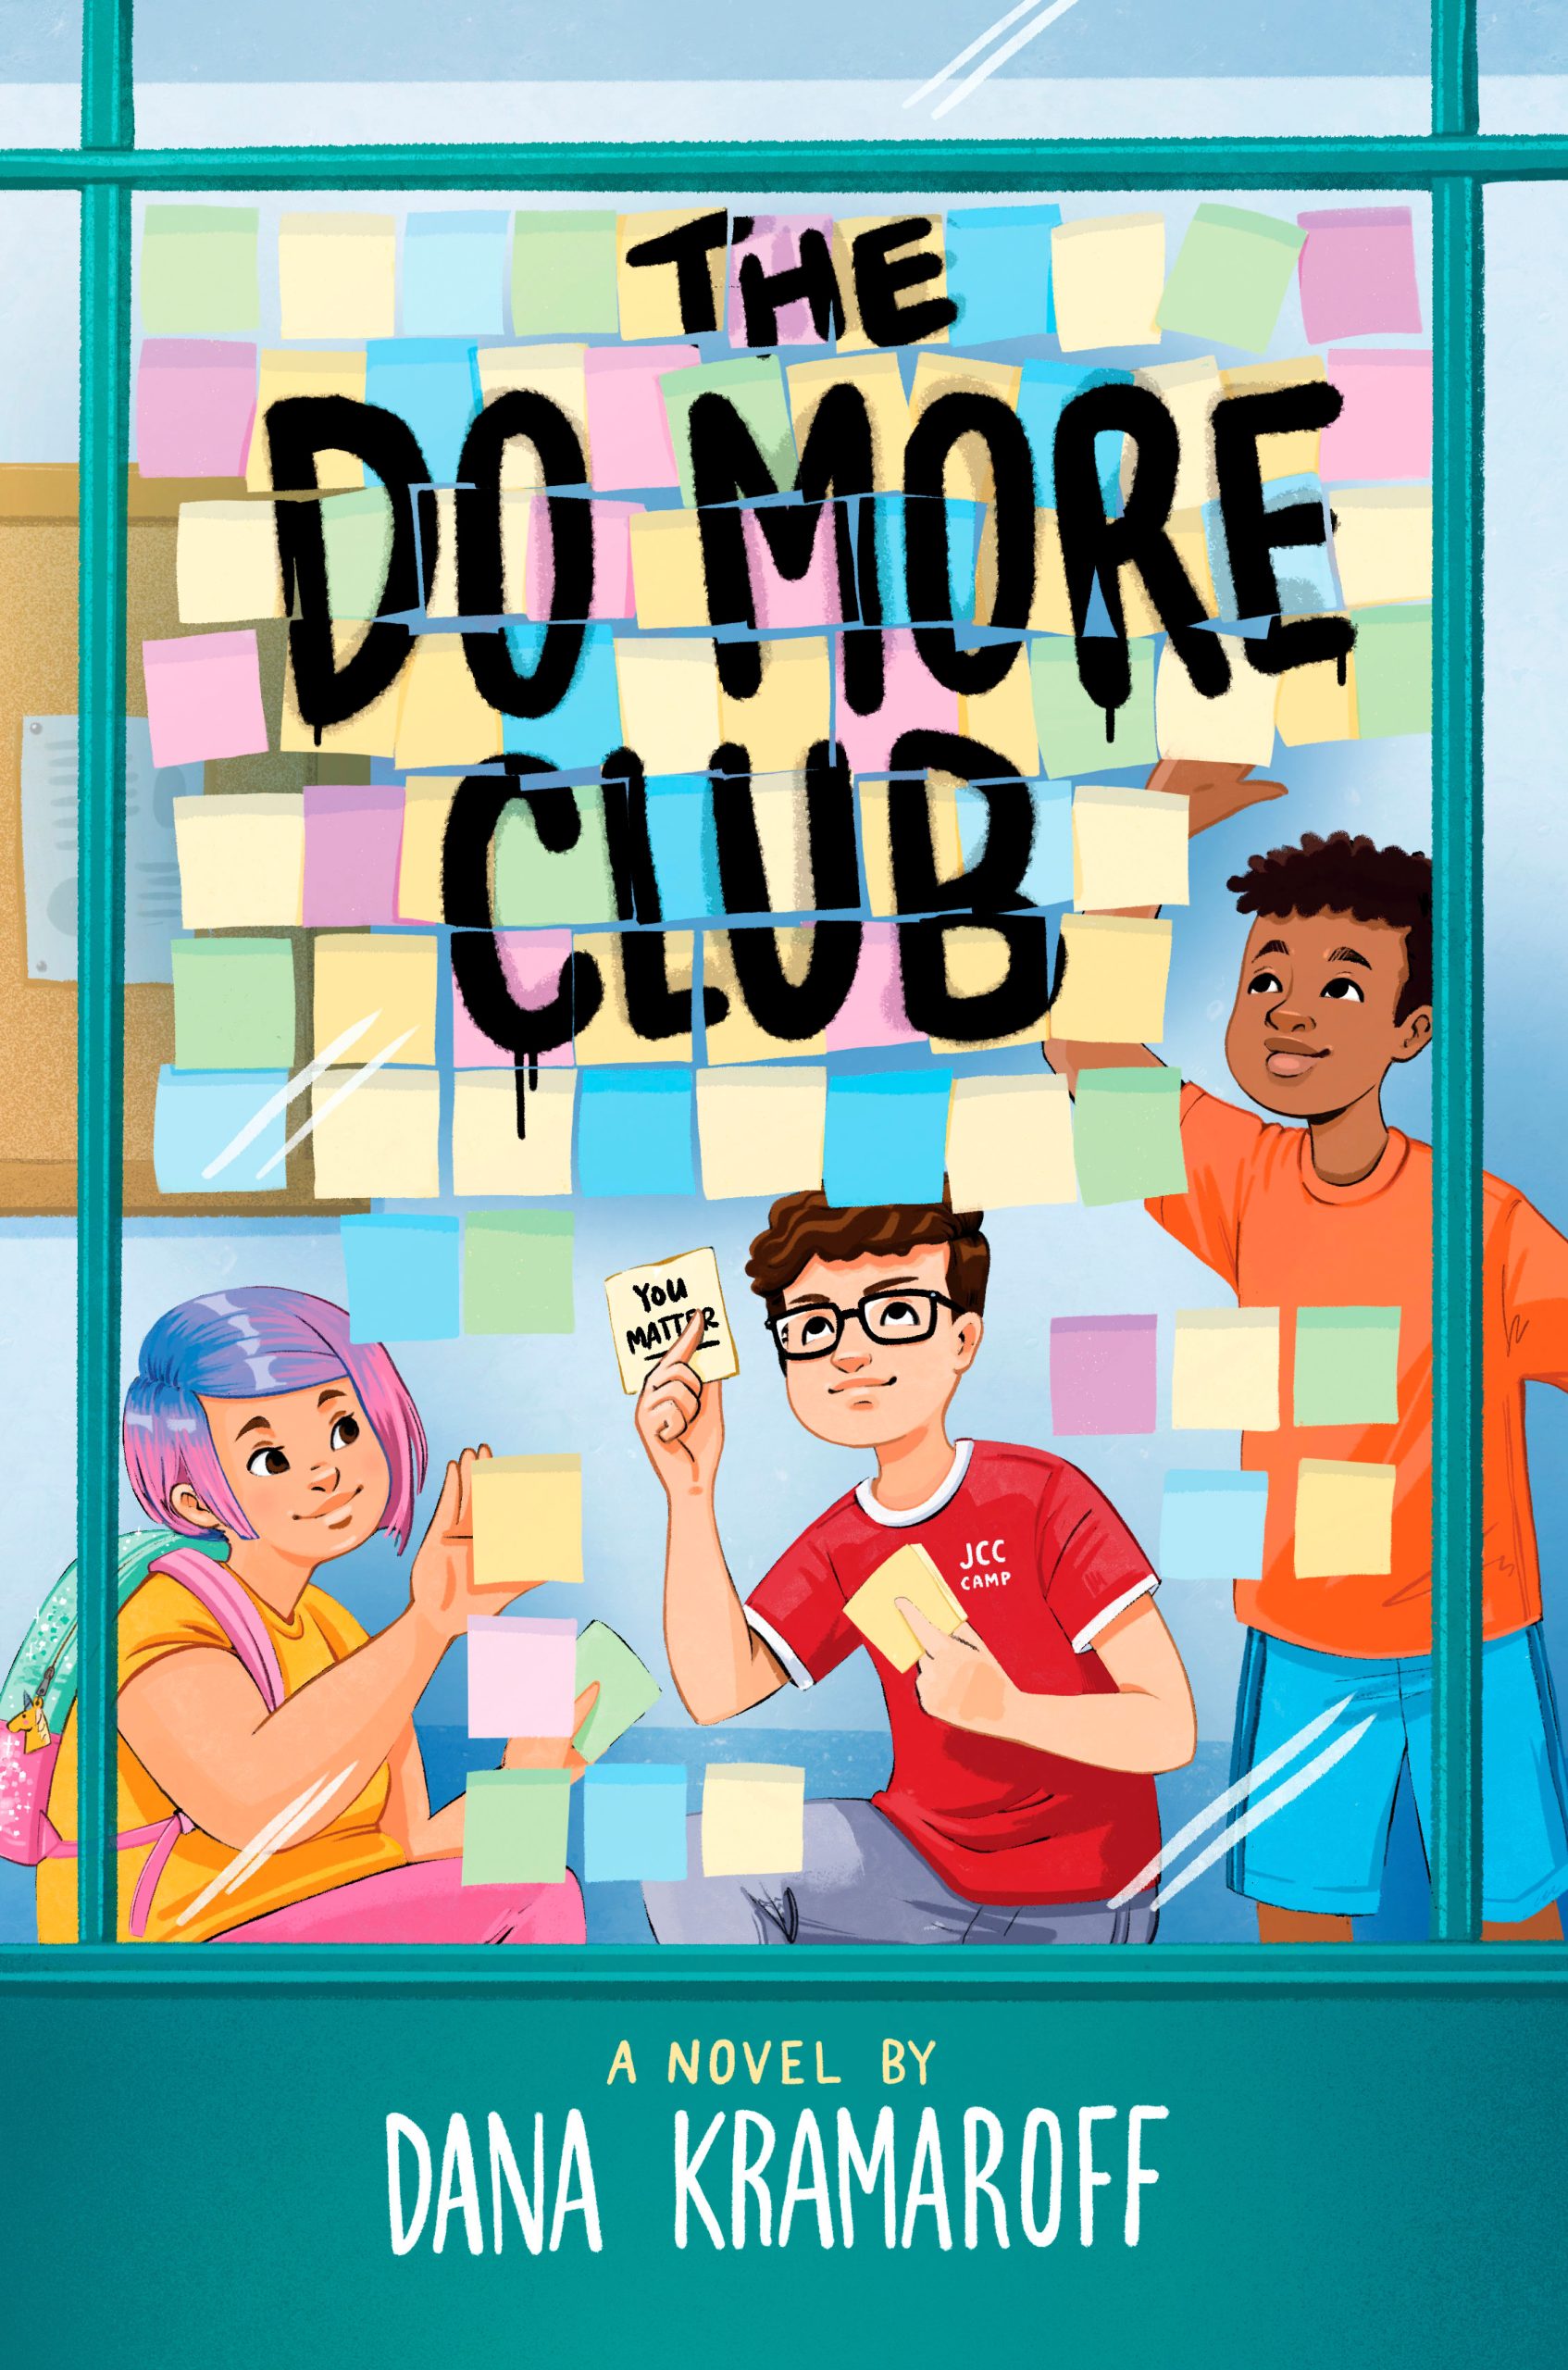 The Do More Club